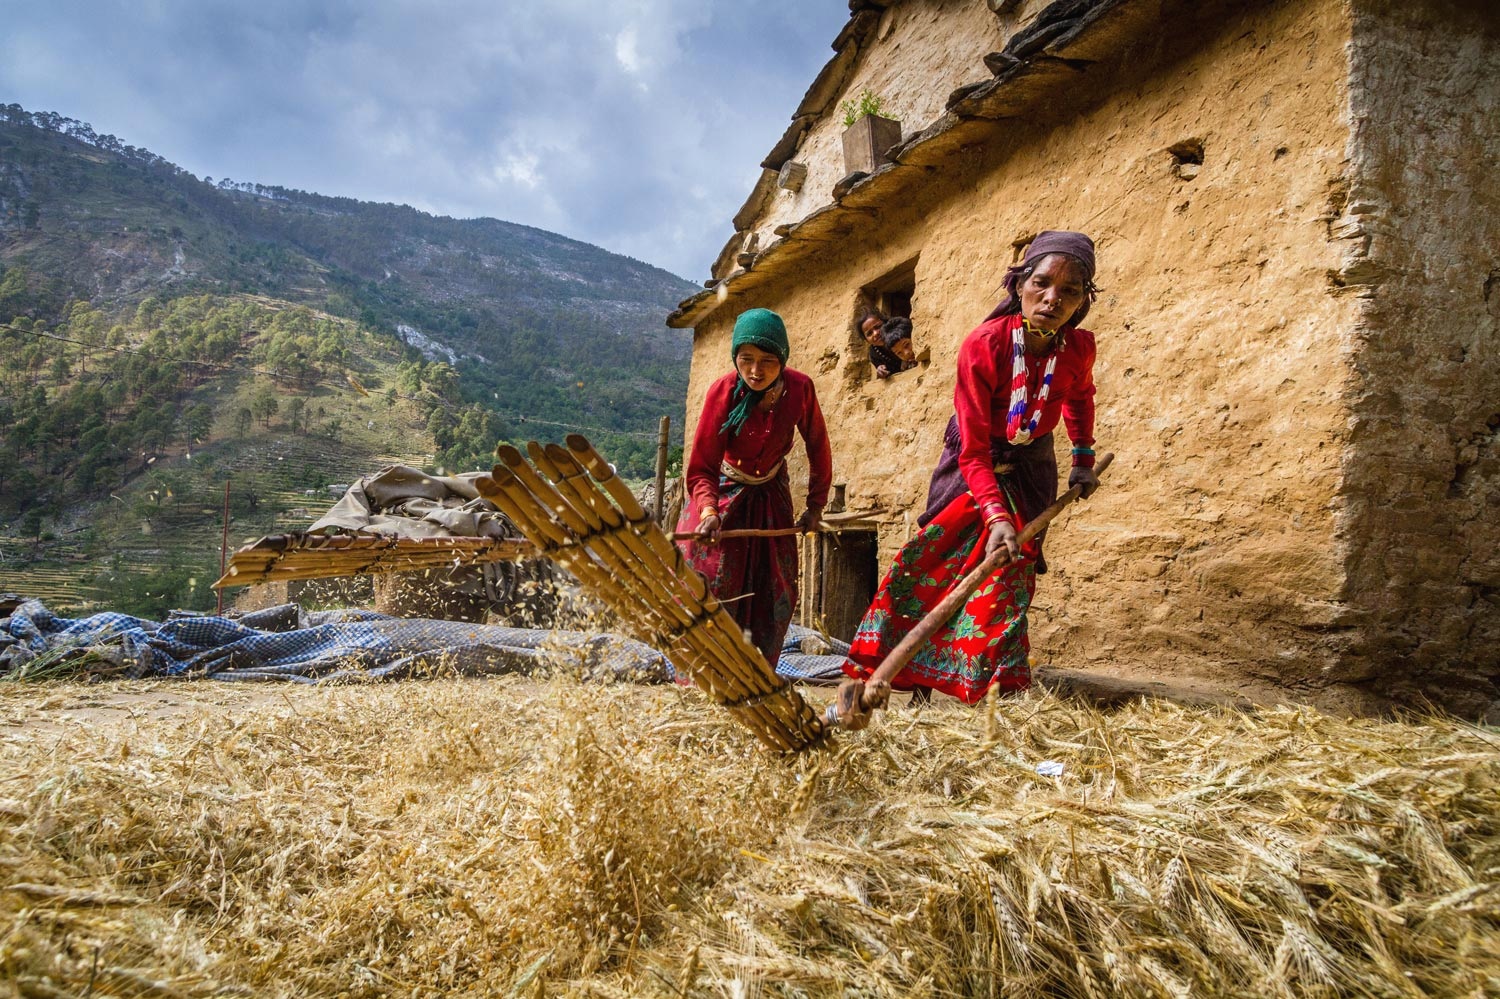  OPEN THIS PUBLICATION  UNICEF NEPAL: GOBINDA'S STORY  